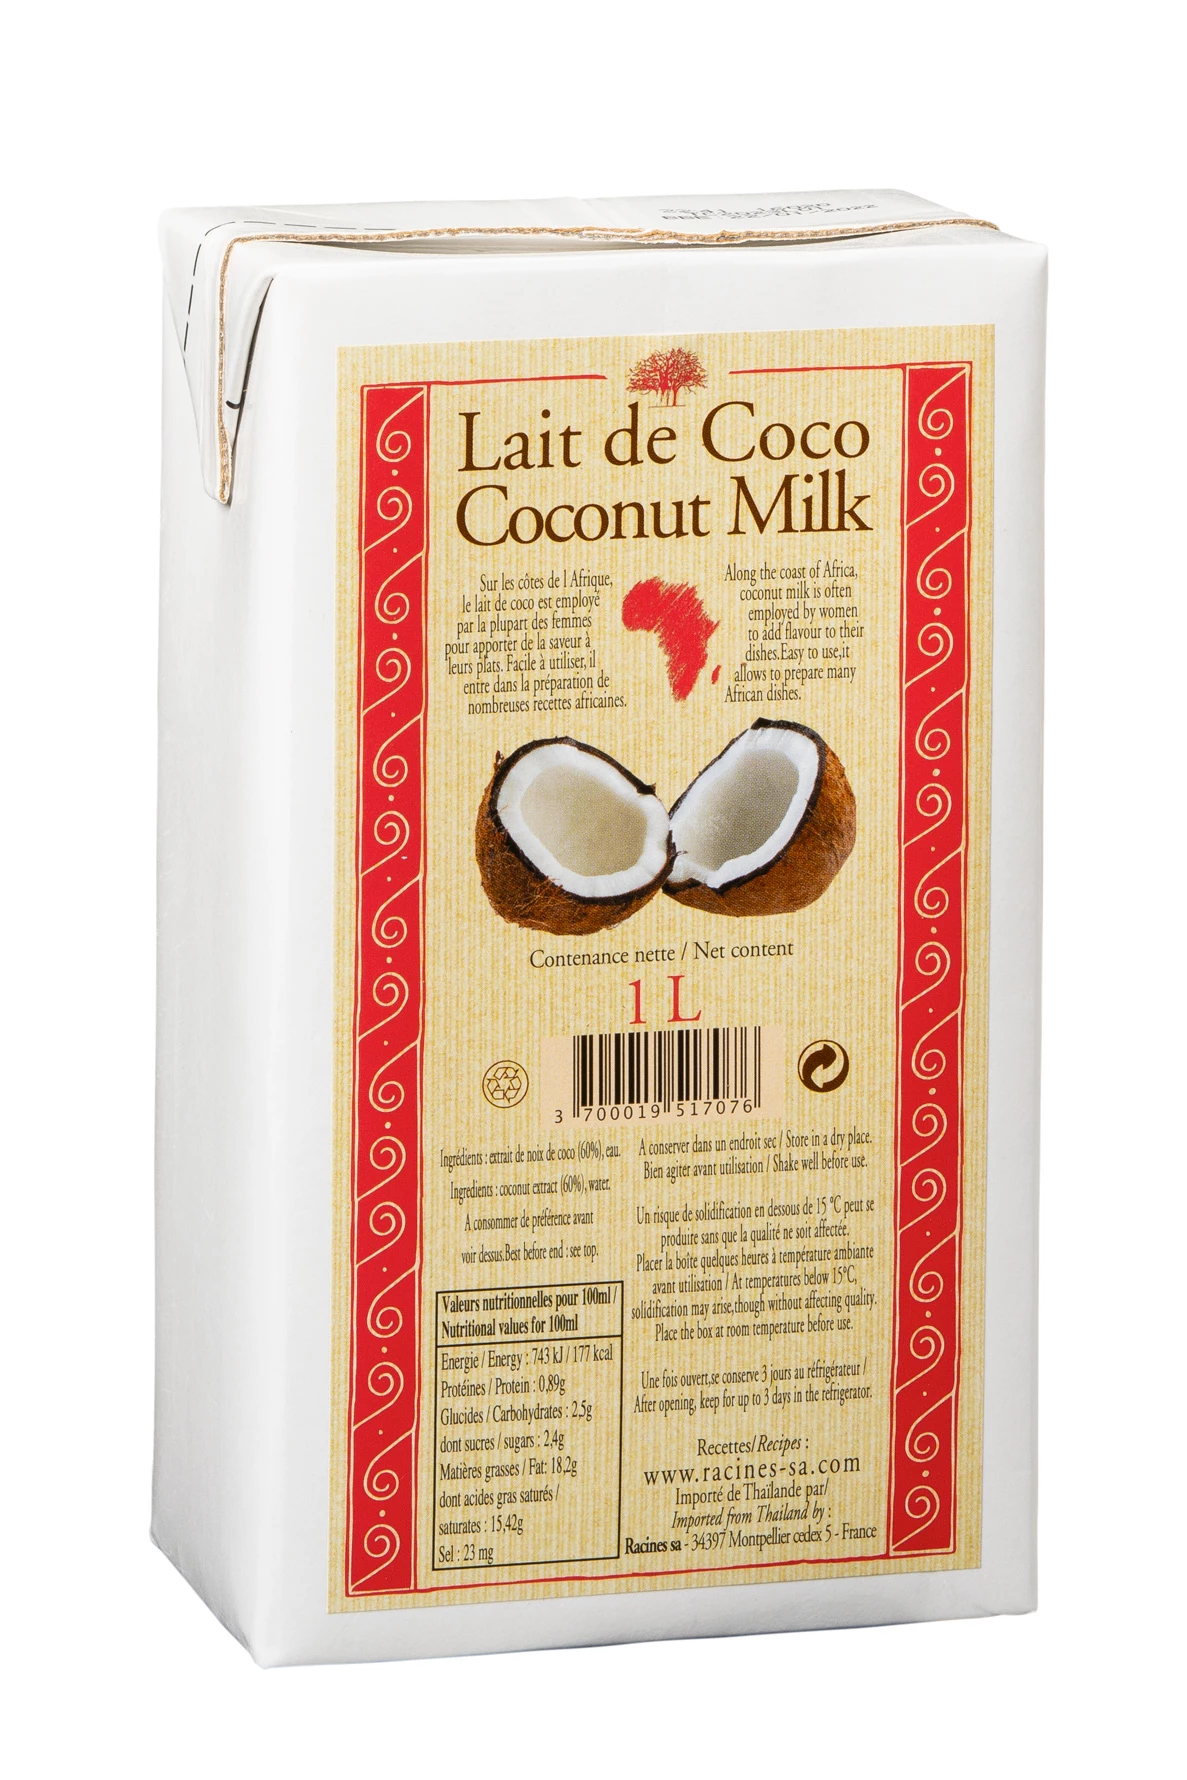 Latte di cocco (12 X 1 L) Confezione tetra - Racines